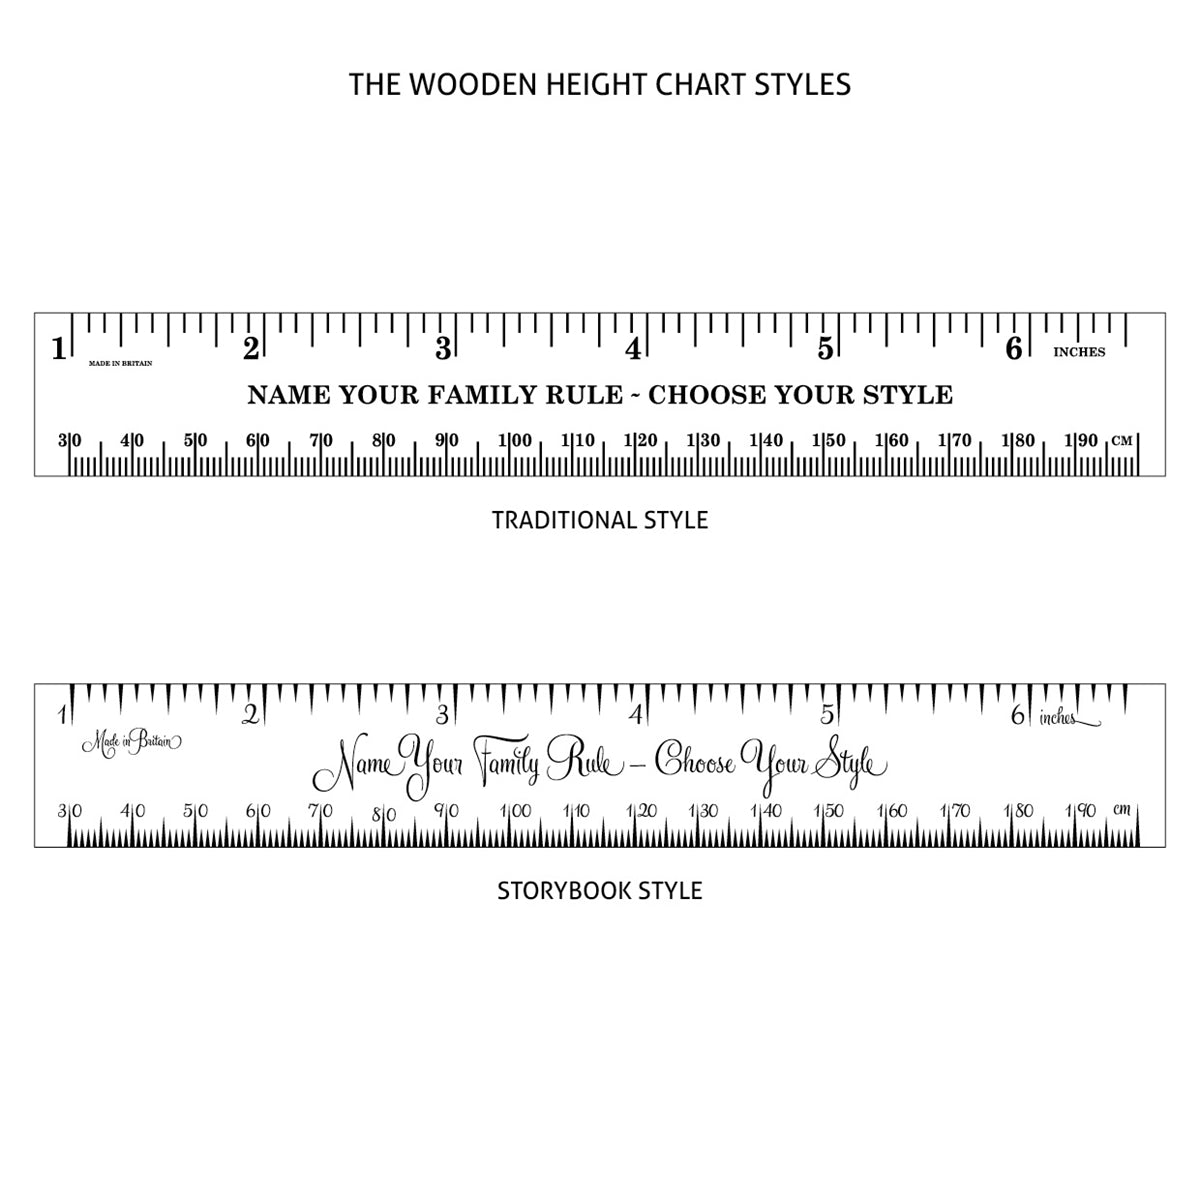 150cm Personalised Engraved Wooden Coat Rack